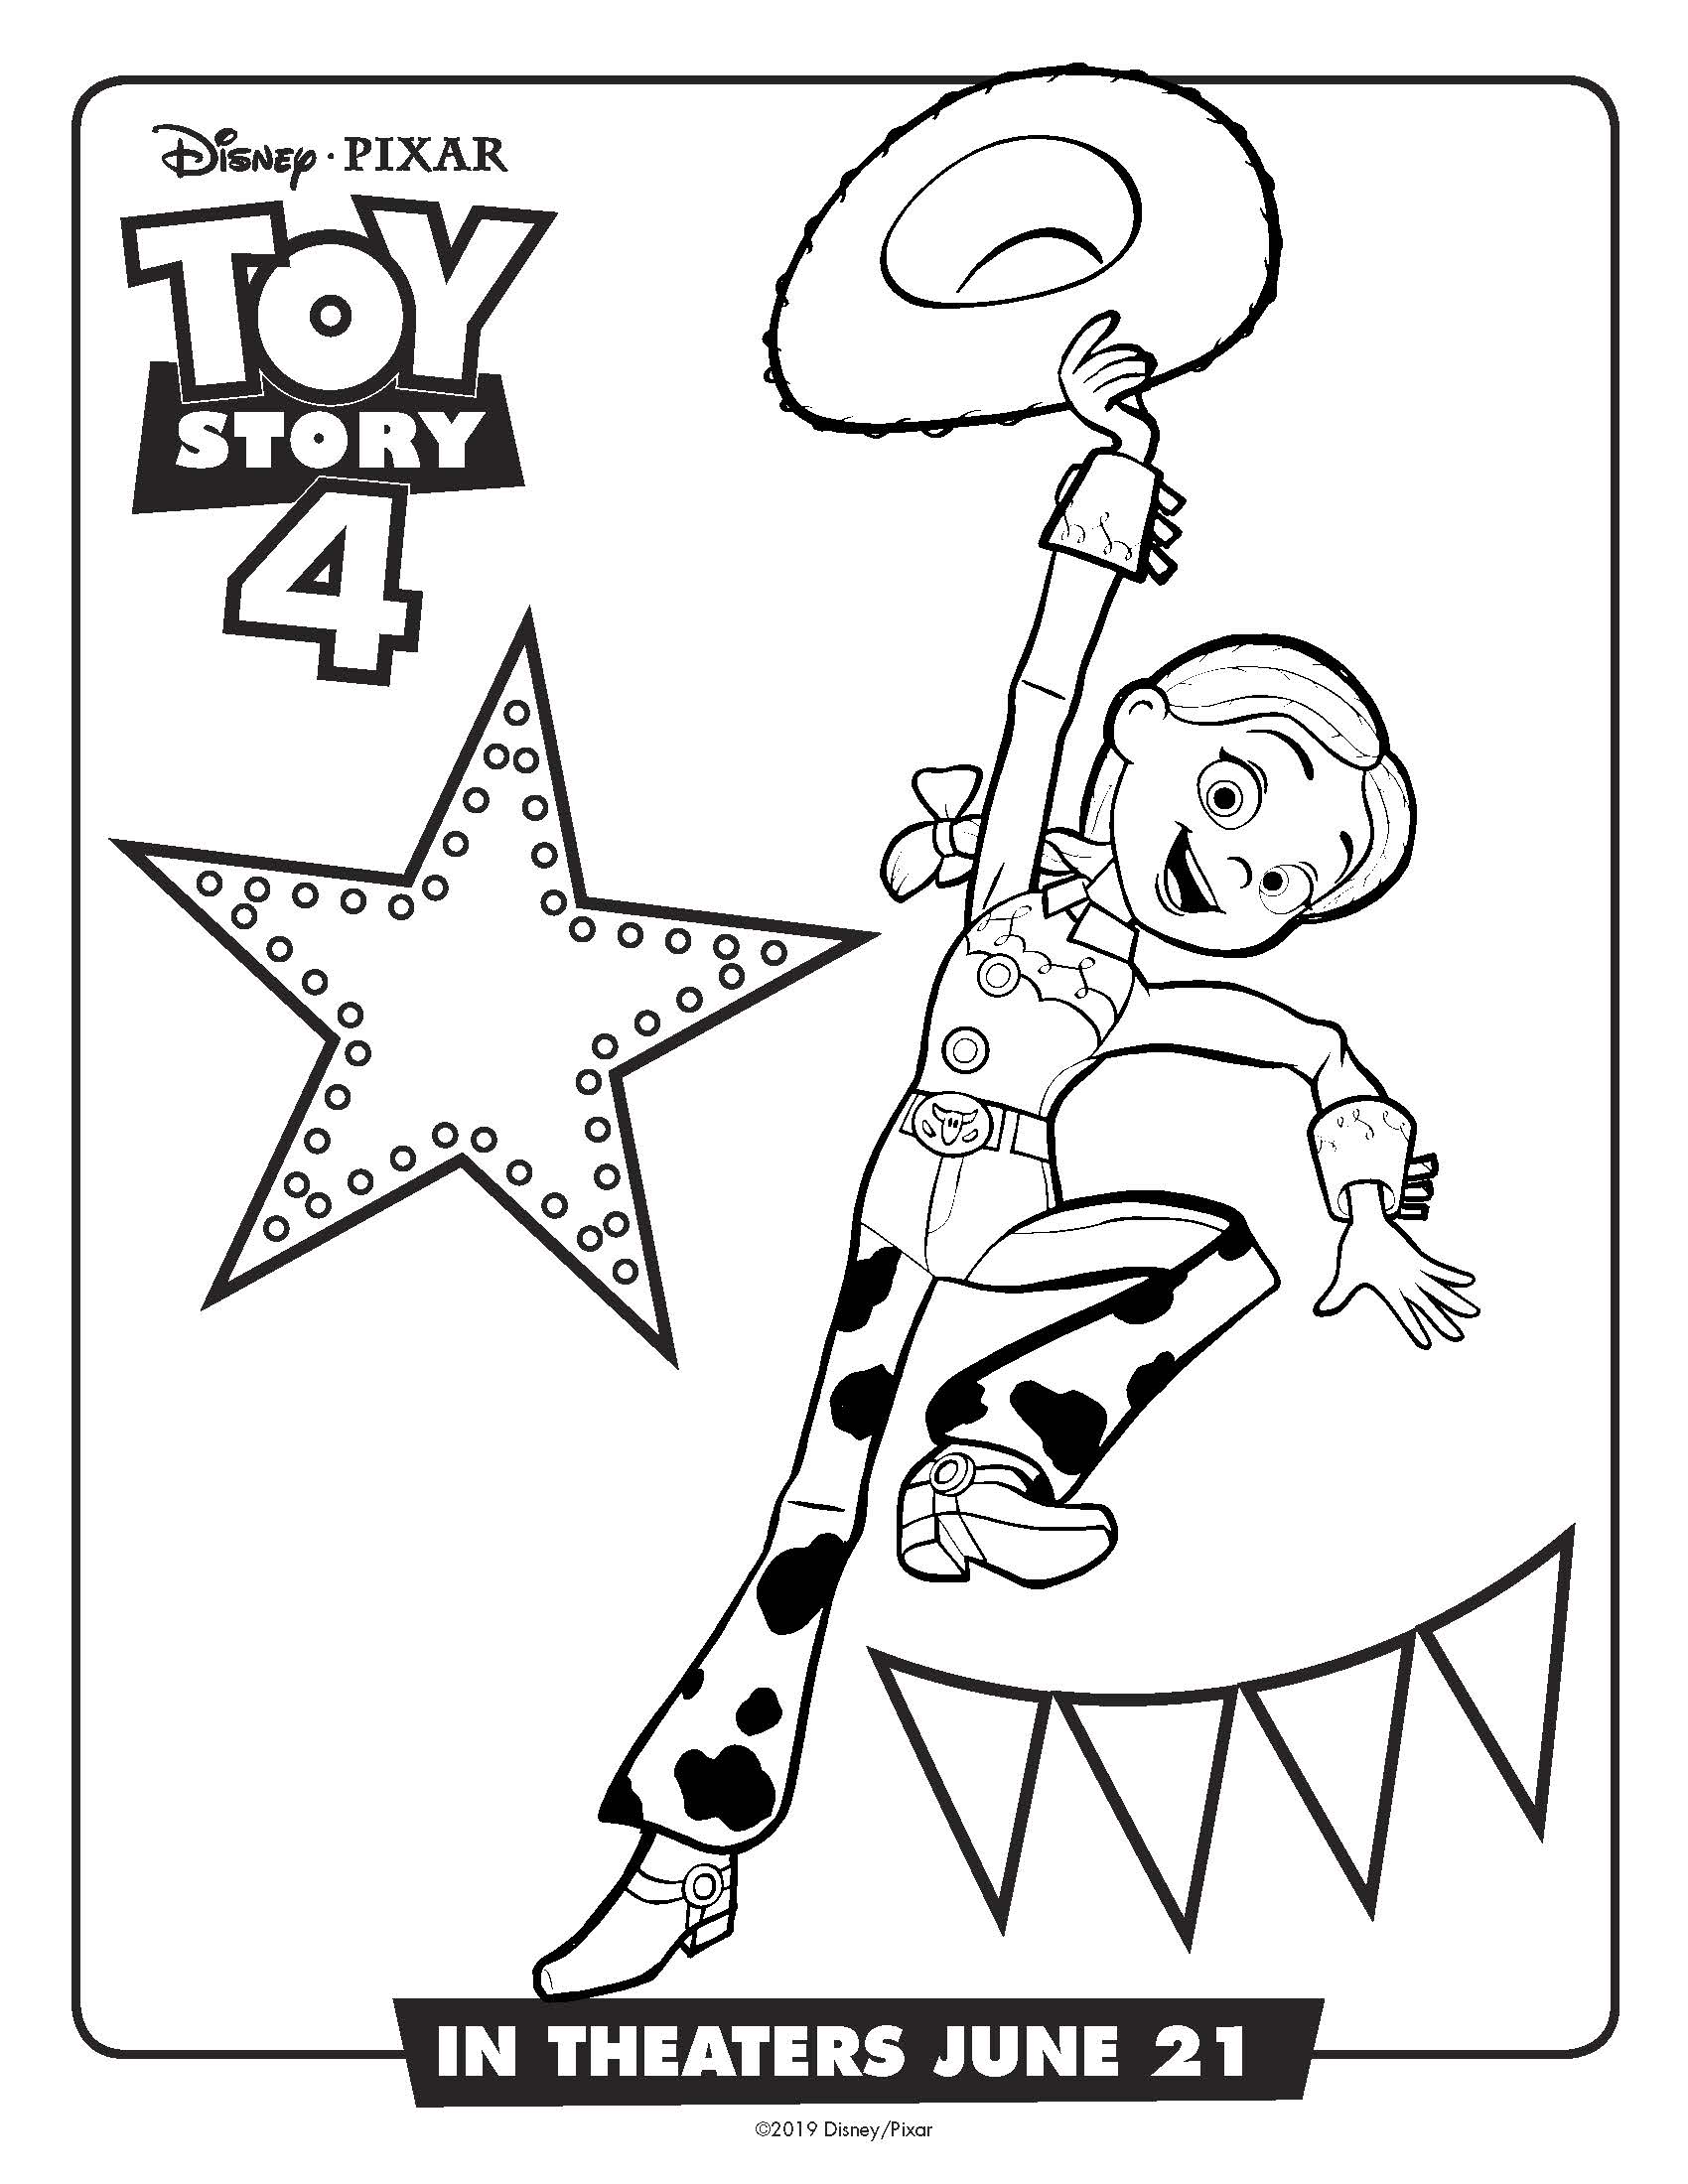 Free Printable.Disney Toy Story Jessie Coloring Page #toystory #toystory4 #jessie #disney #pixar #coloringpage #free printable